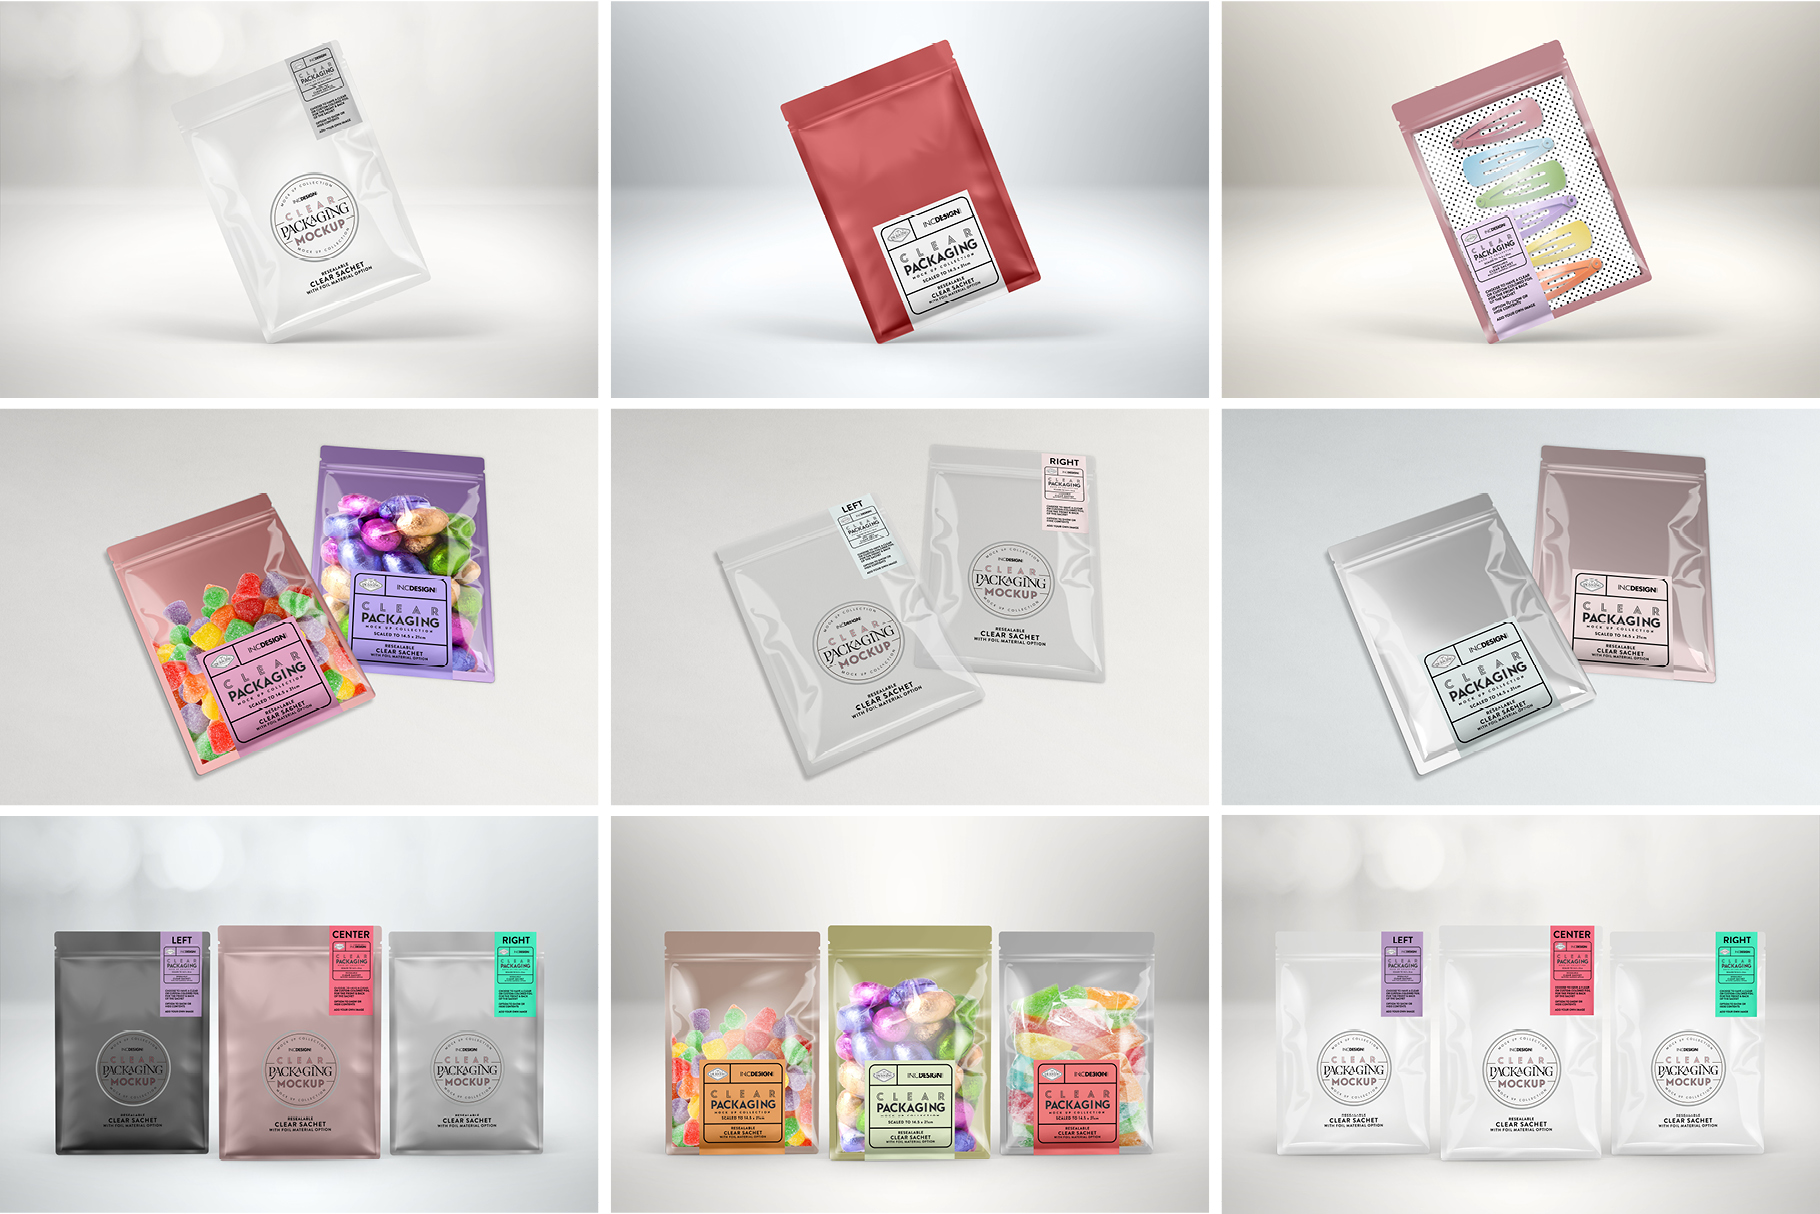 Download Clear Foil Sachet Packaging Mockup (161940) | Branding | Design Bundles